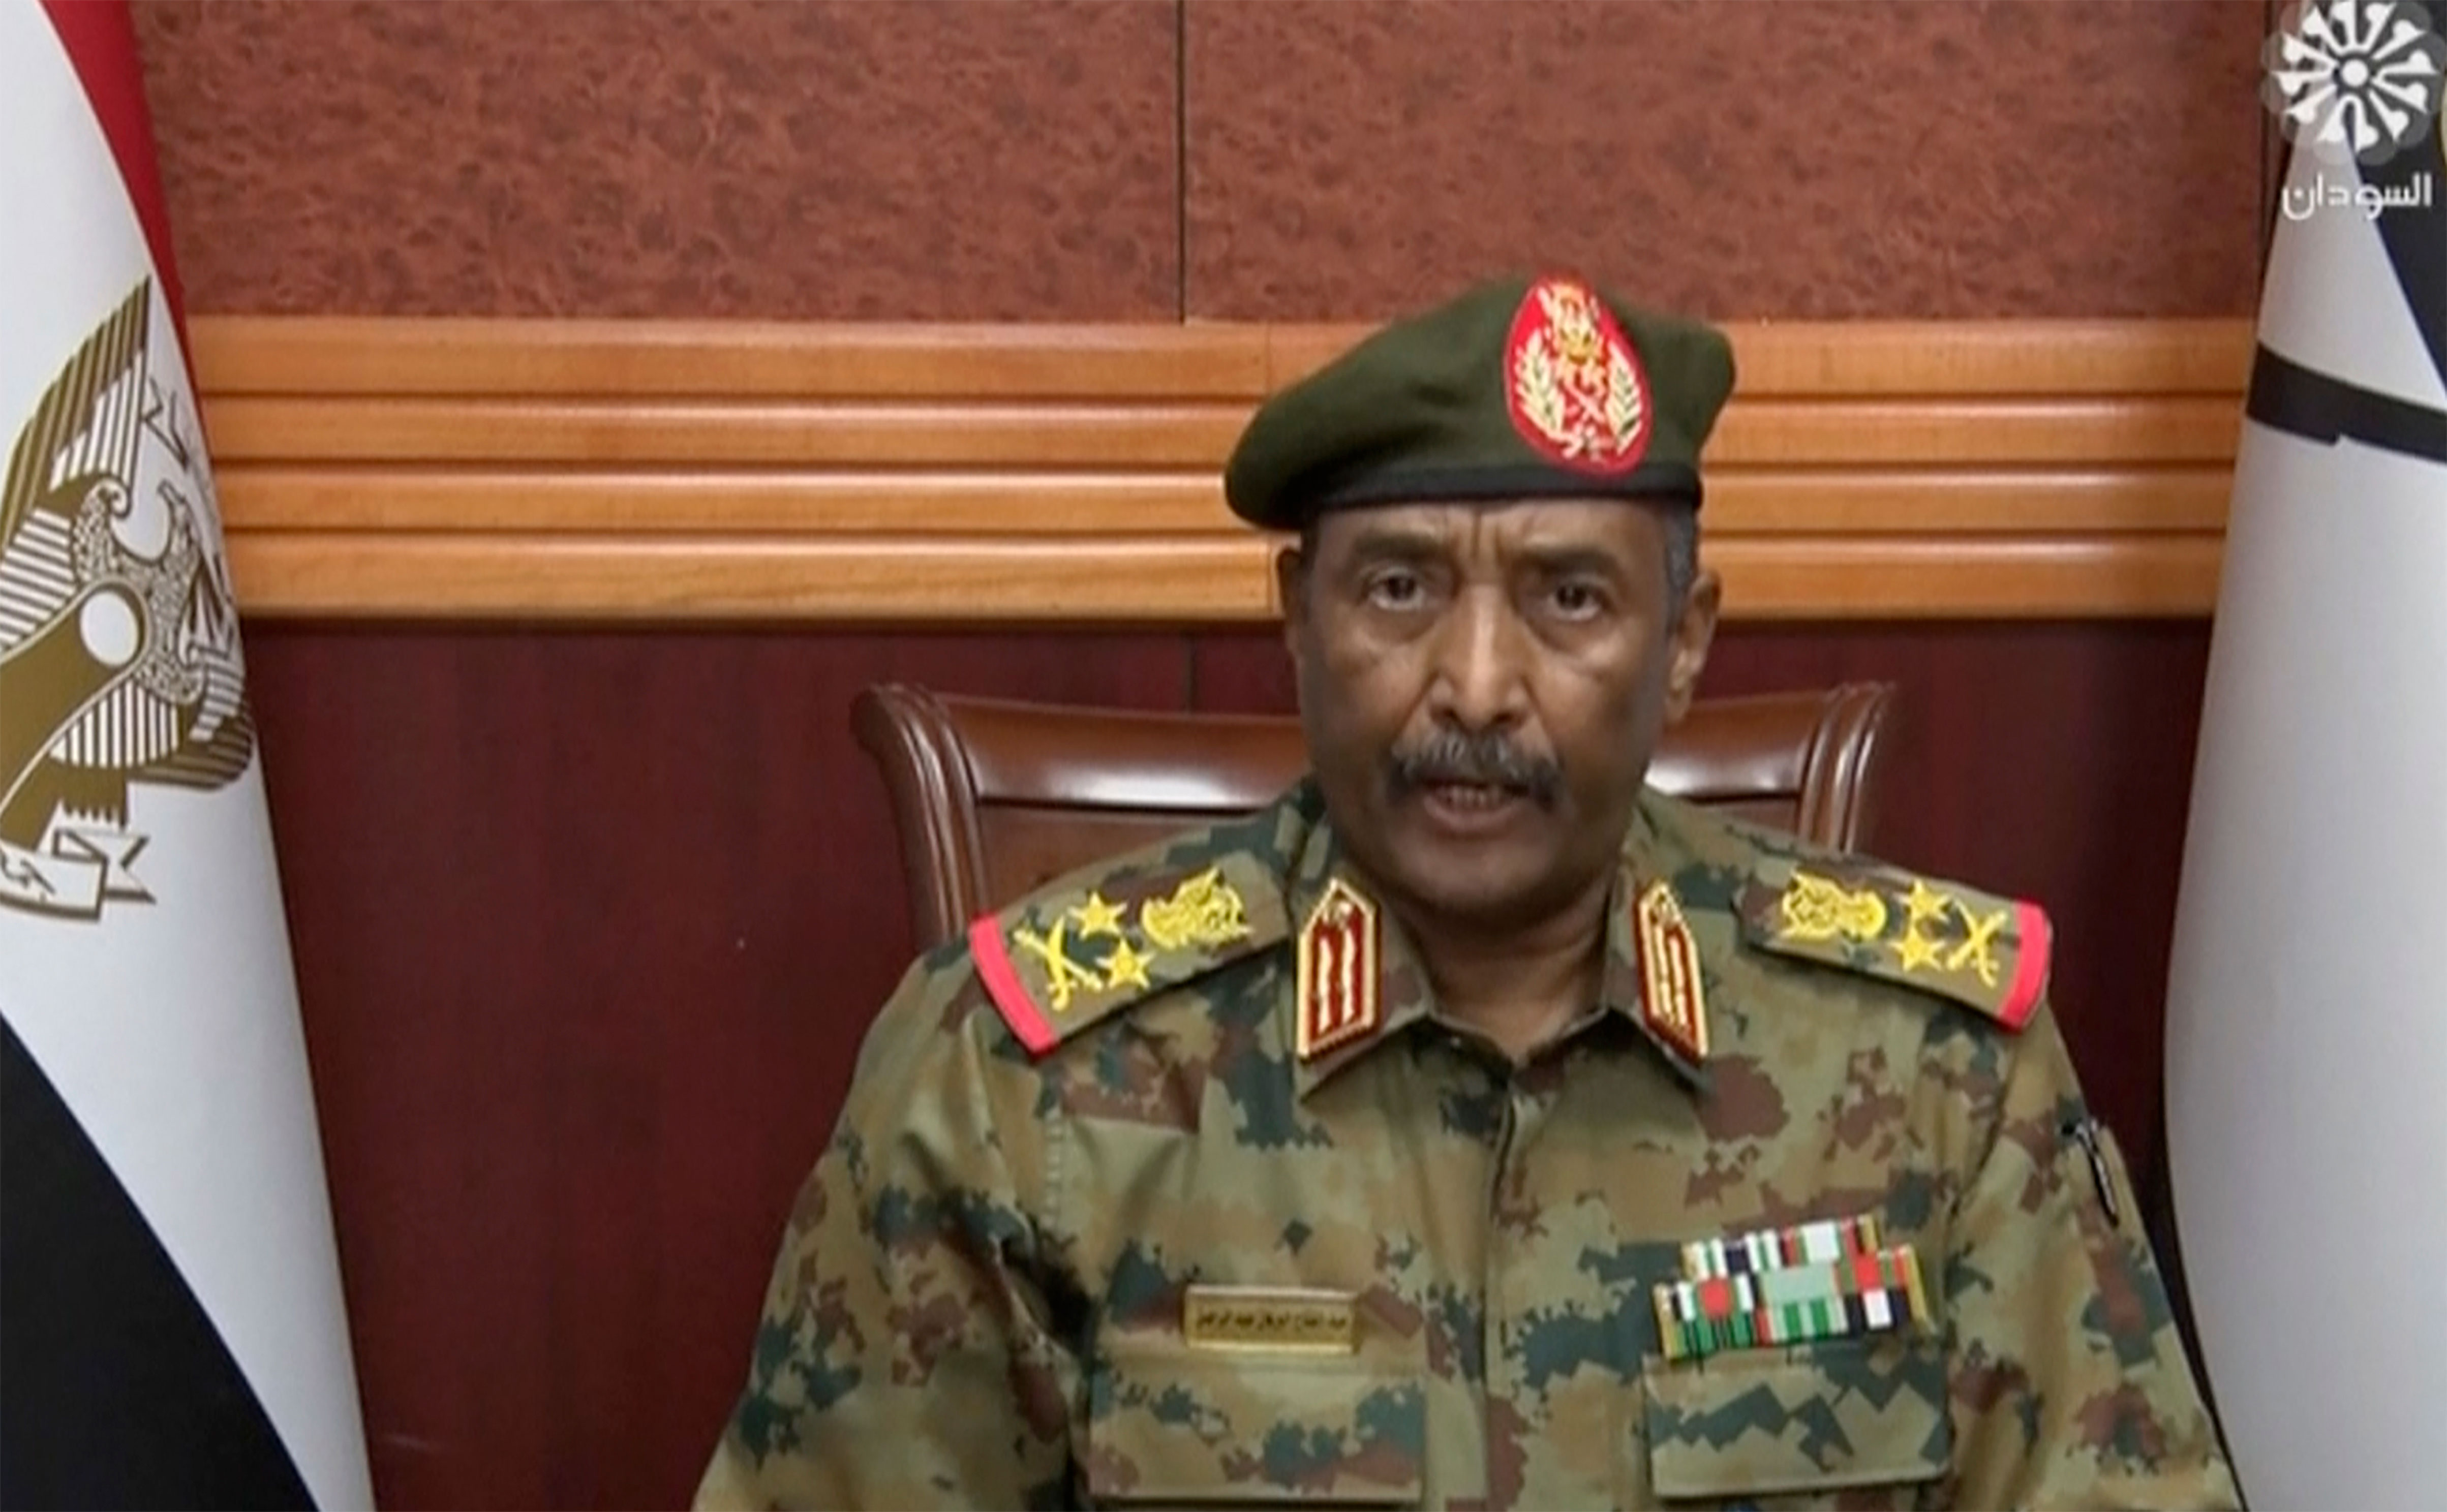 dba1fbaa 926c 47de 97a1 c651f5c74862 - Le Premier ministre soudanais détenu dans le cadre d'une prise de pouvoir militaire